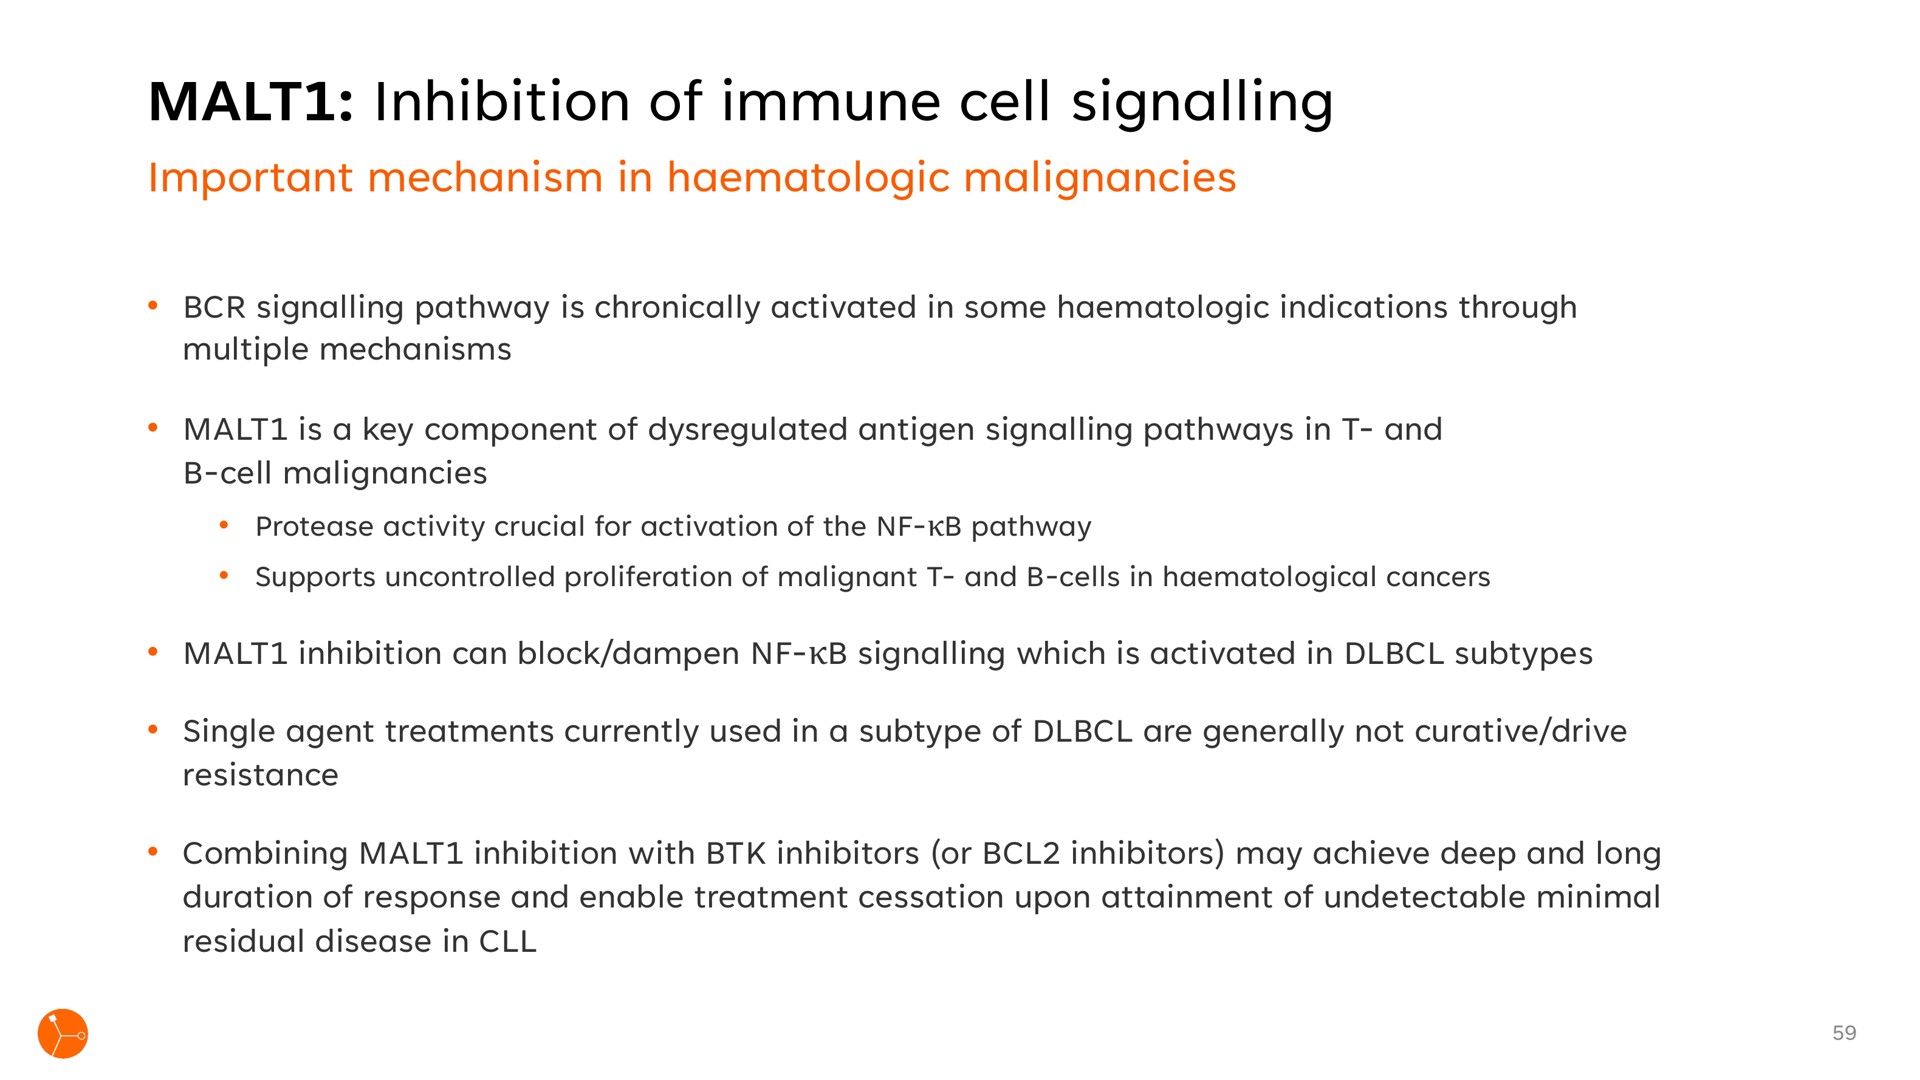 malt inhibition of immune cell signalling | Exscientia